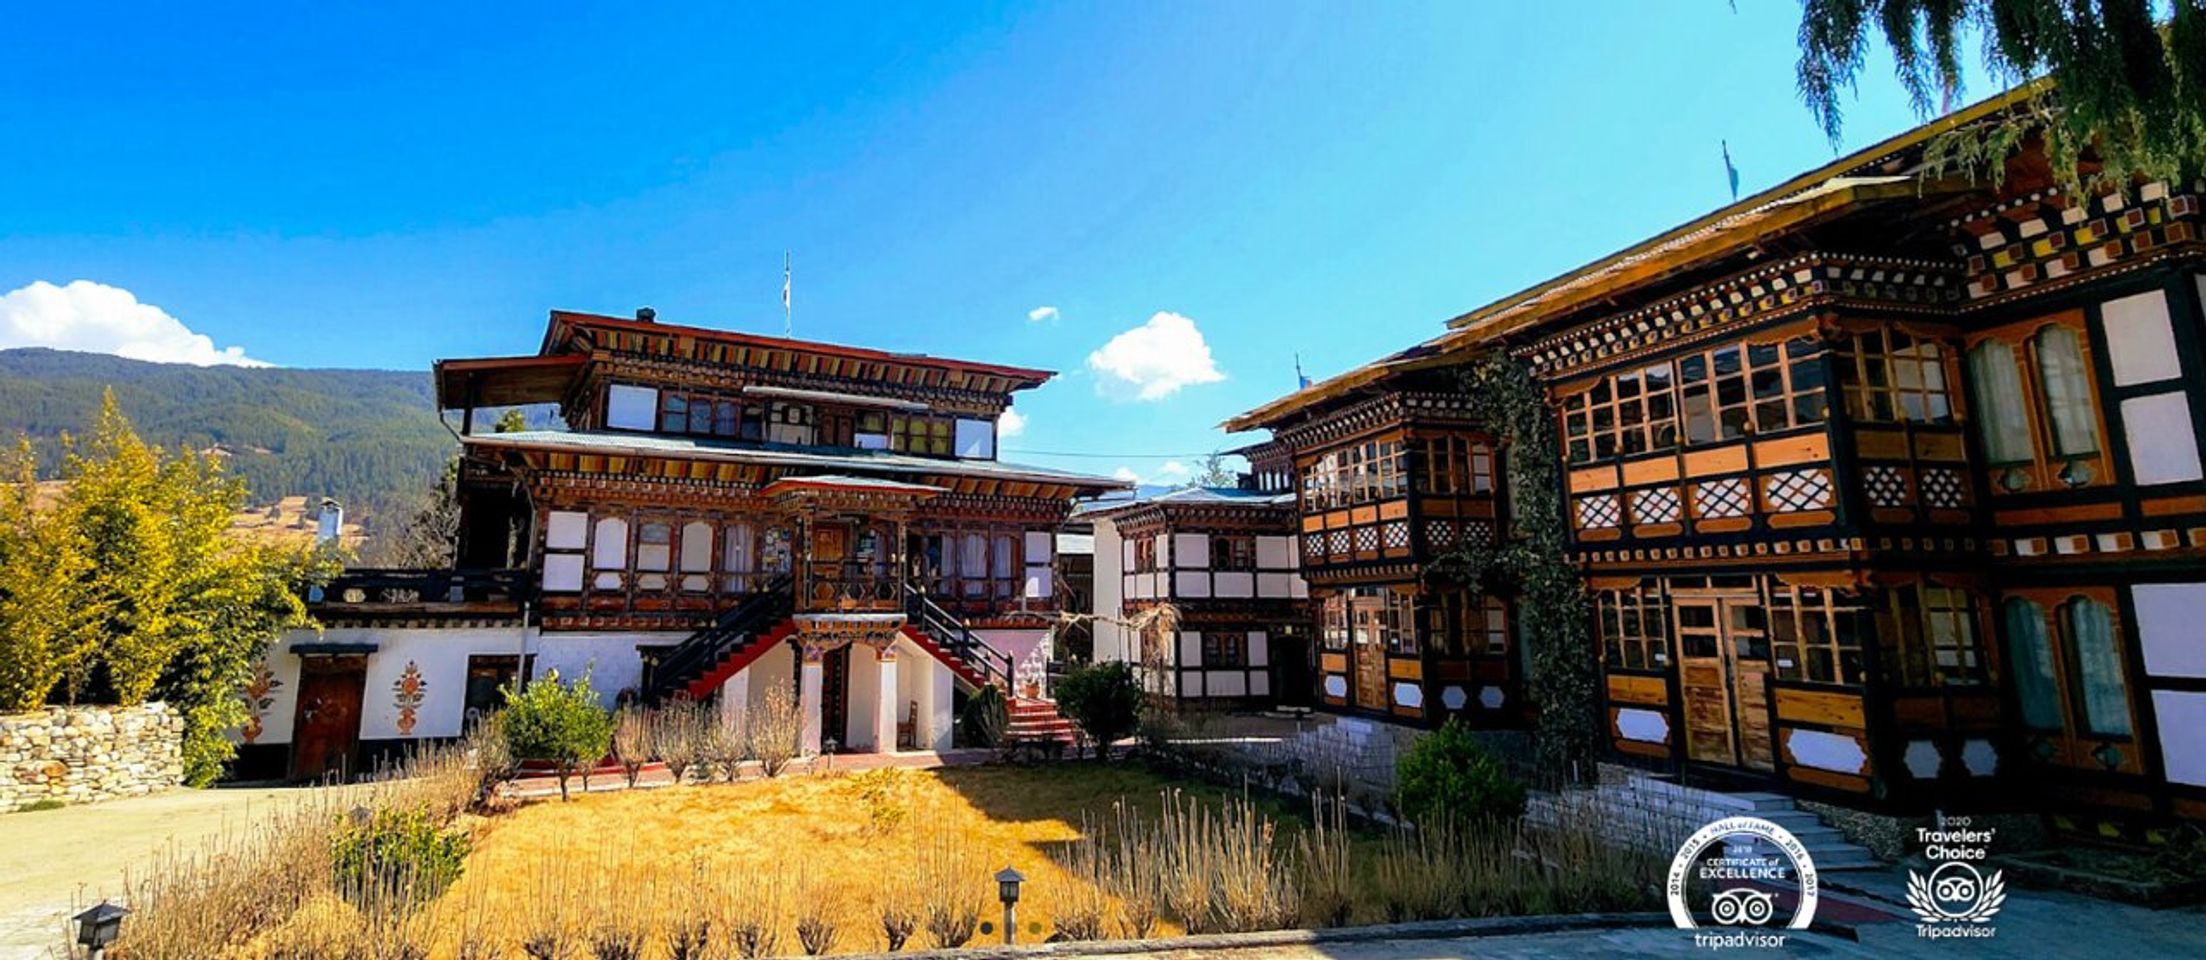 Ontdekken van de verborgen juweeltjes van Jakar, Bhutan: Jouw ultieme gids